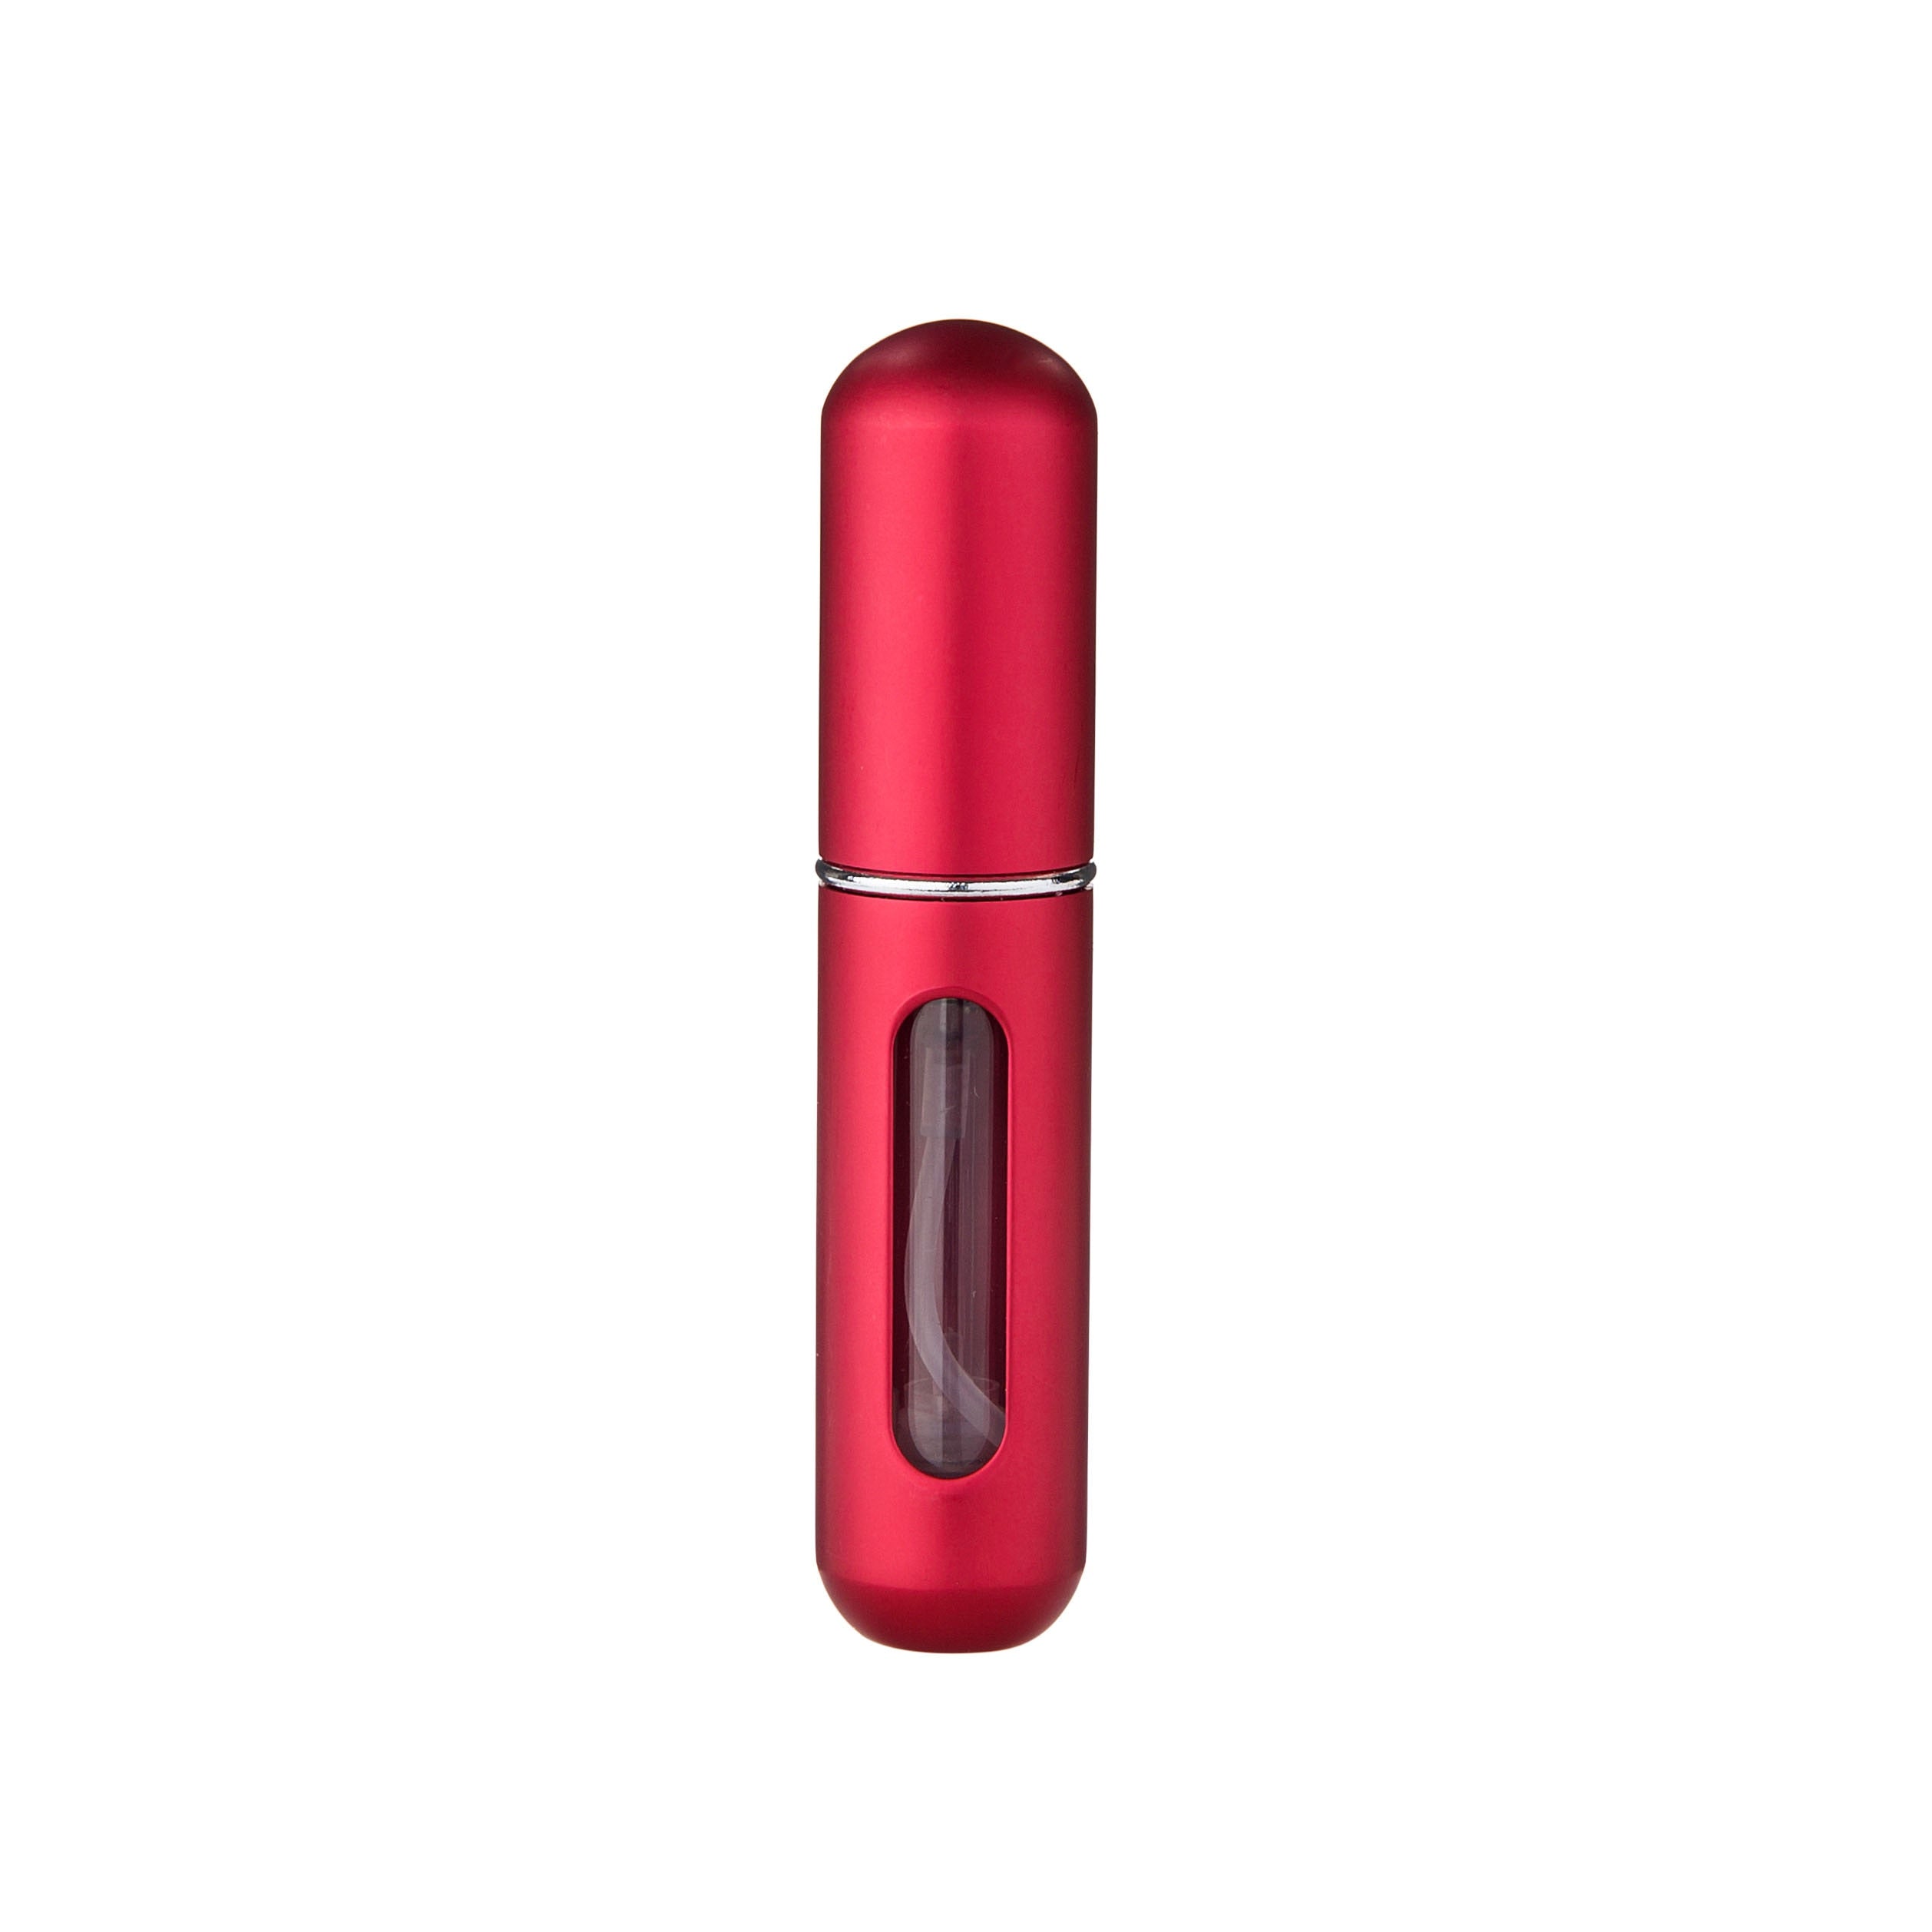 Red - 5ml Portable Mini Refillable Perfume Bottle - Travel Spray Atomizer Bottle